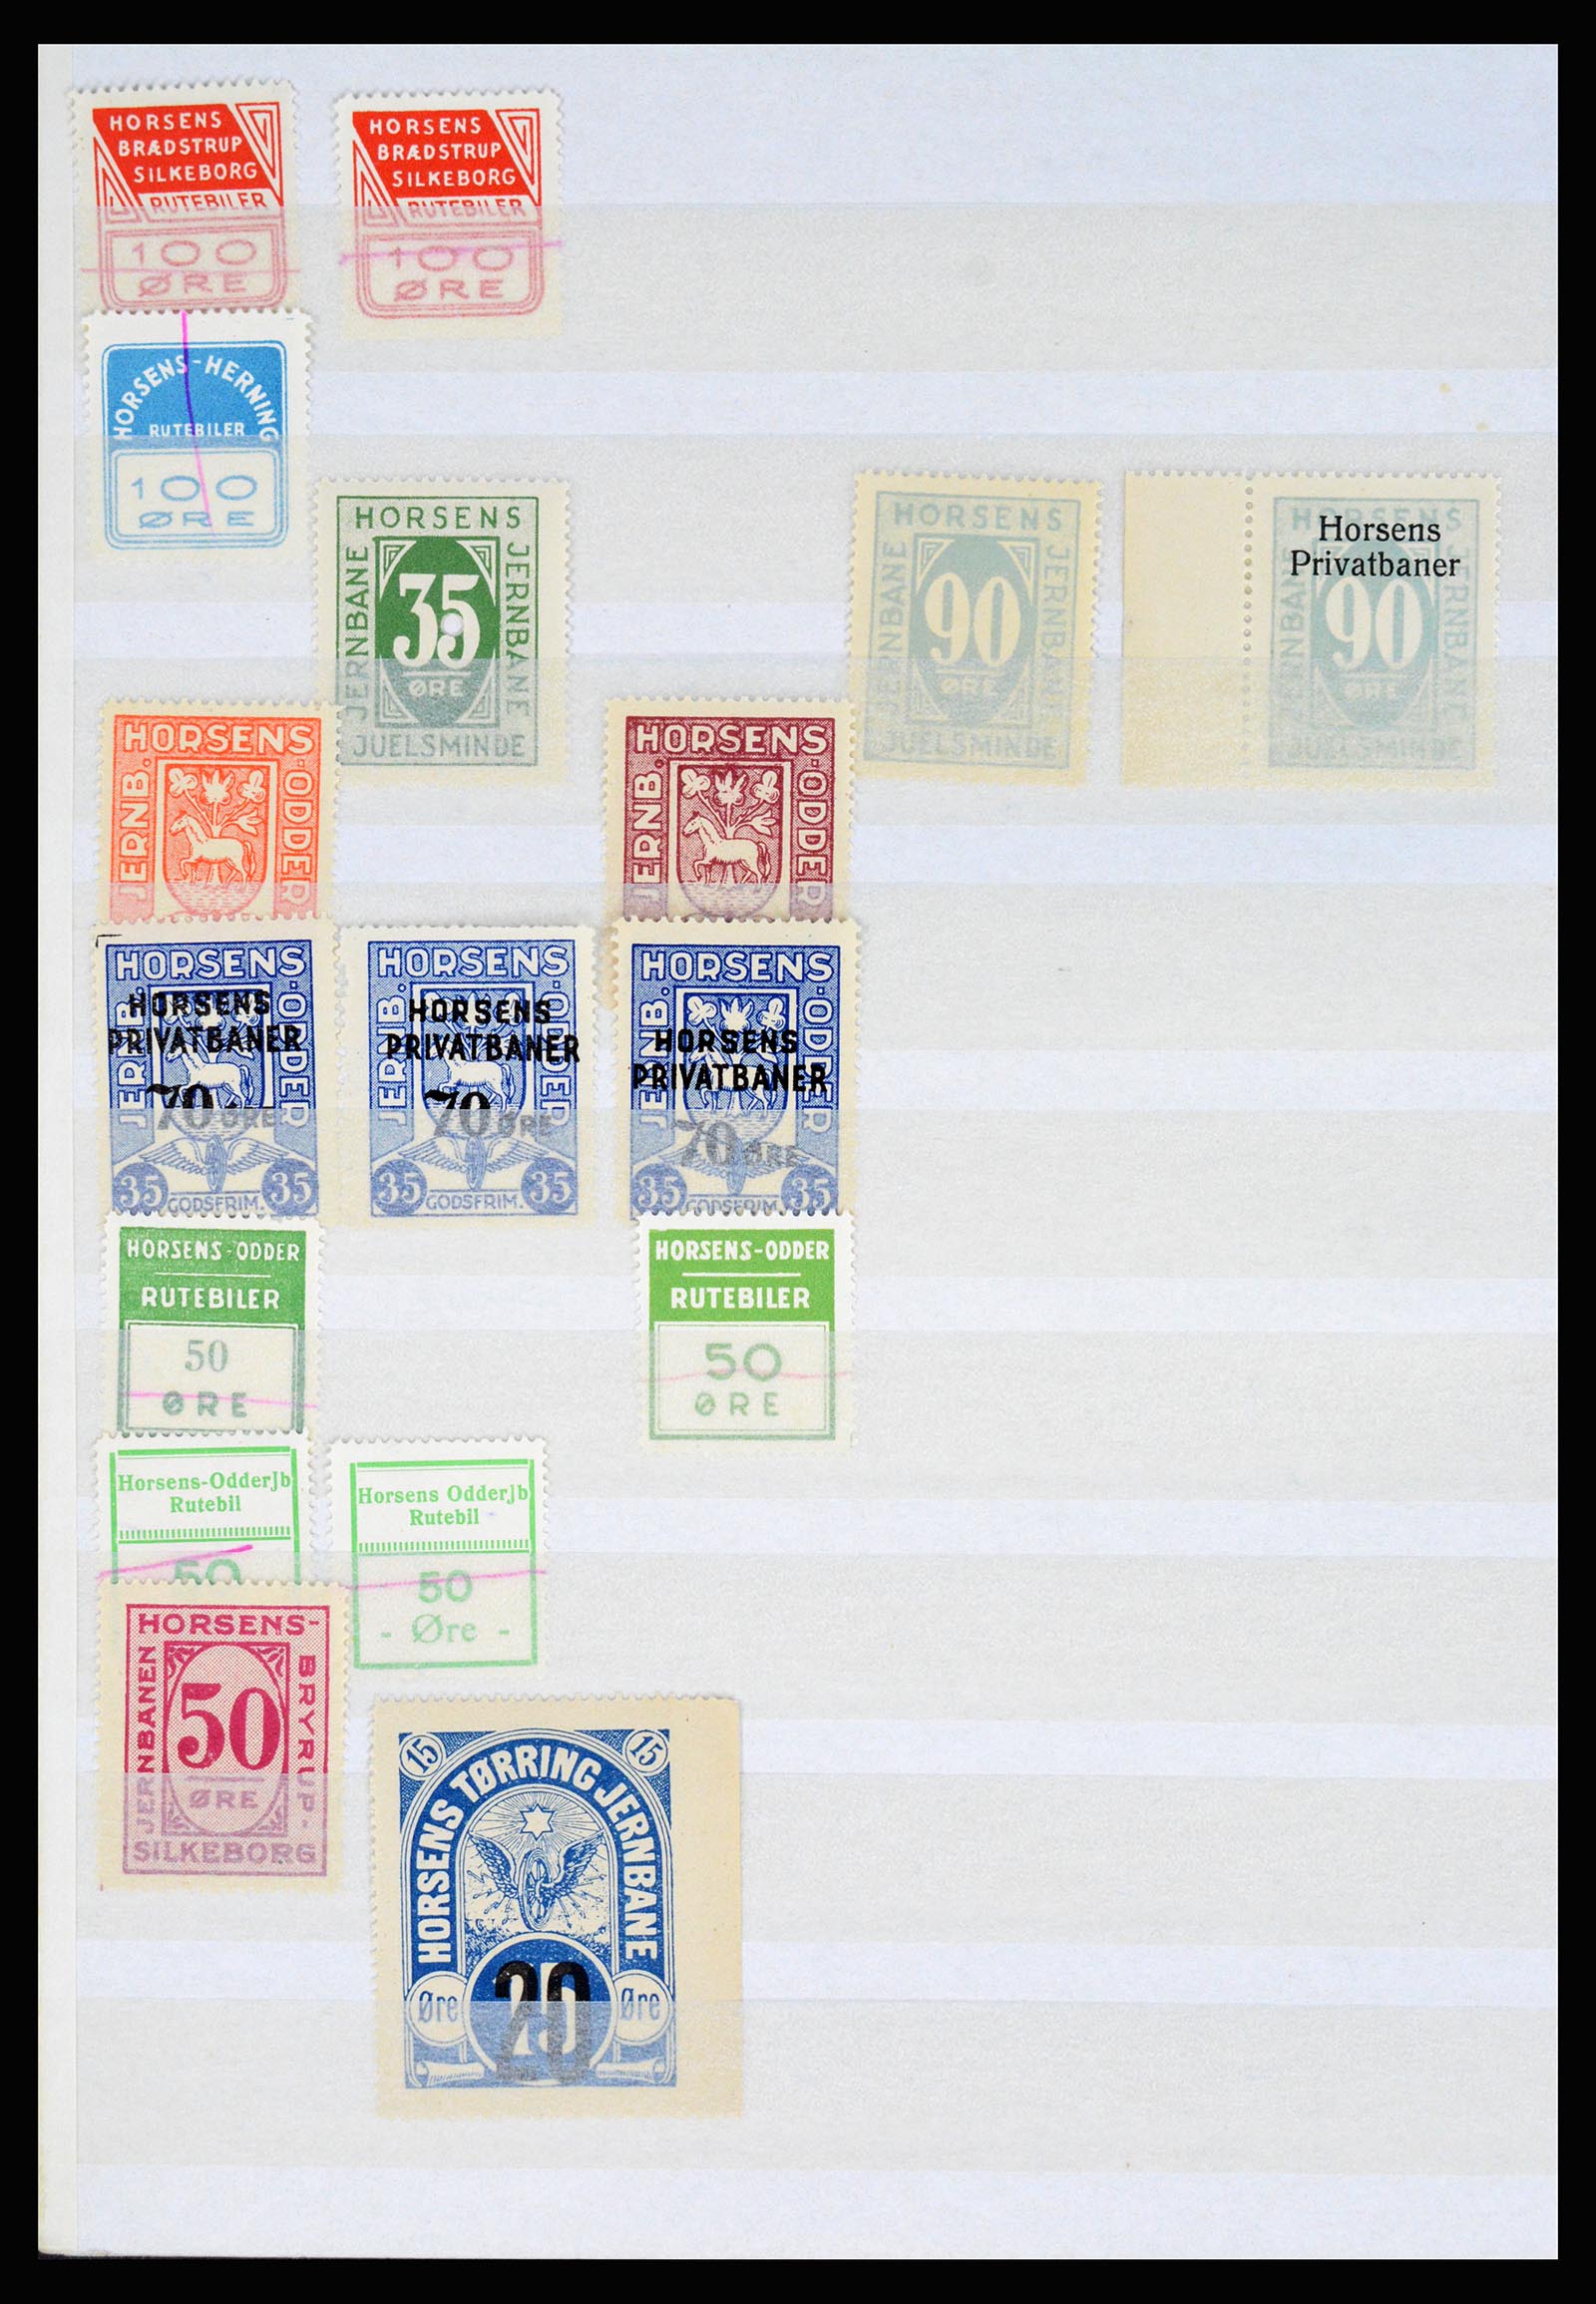 36982 030 - Postzegelverzameling 36982 Denemarken spoorwegzegels.